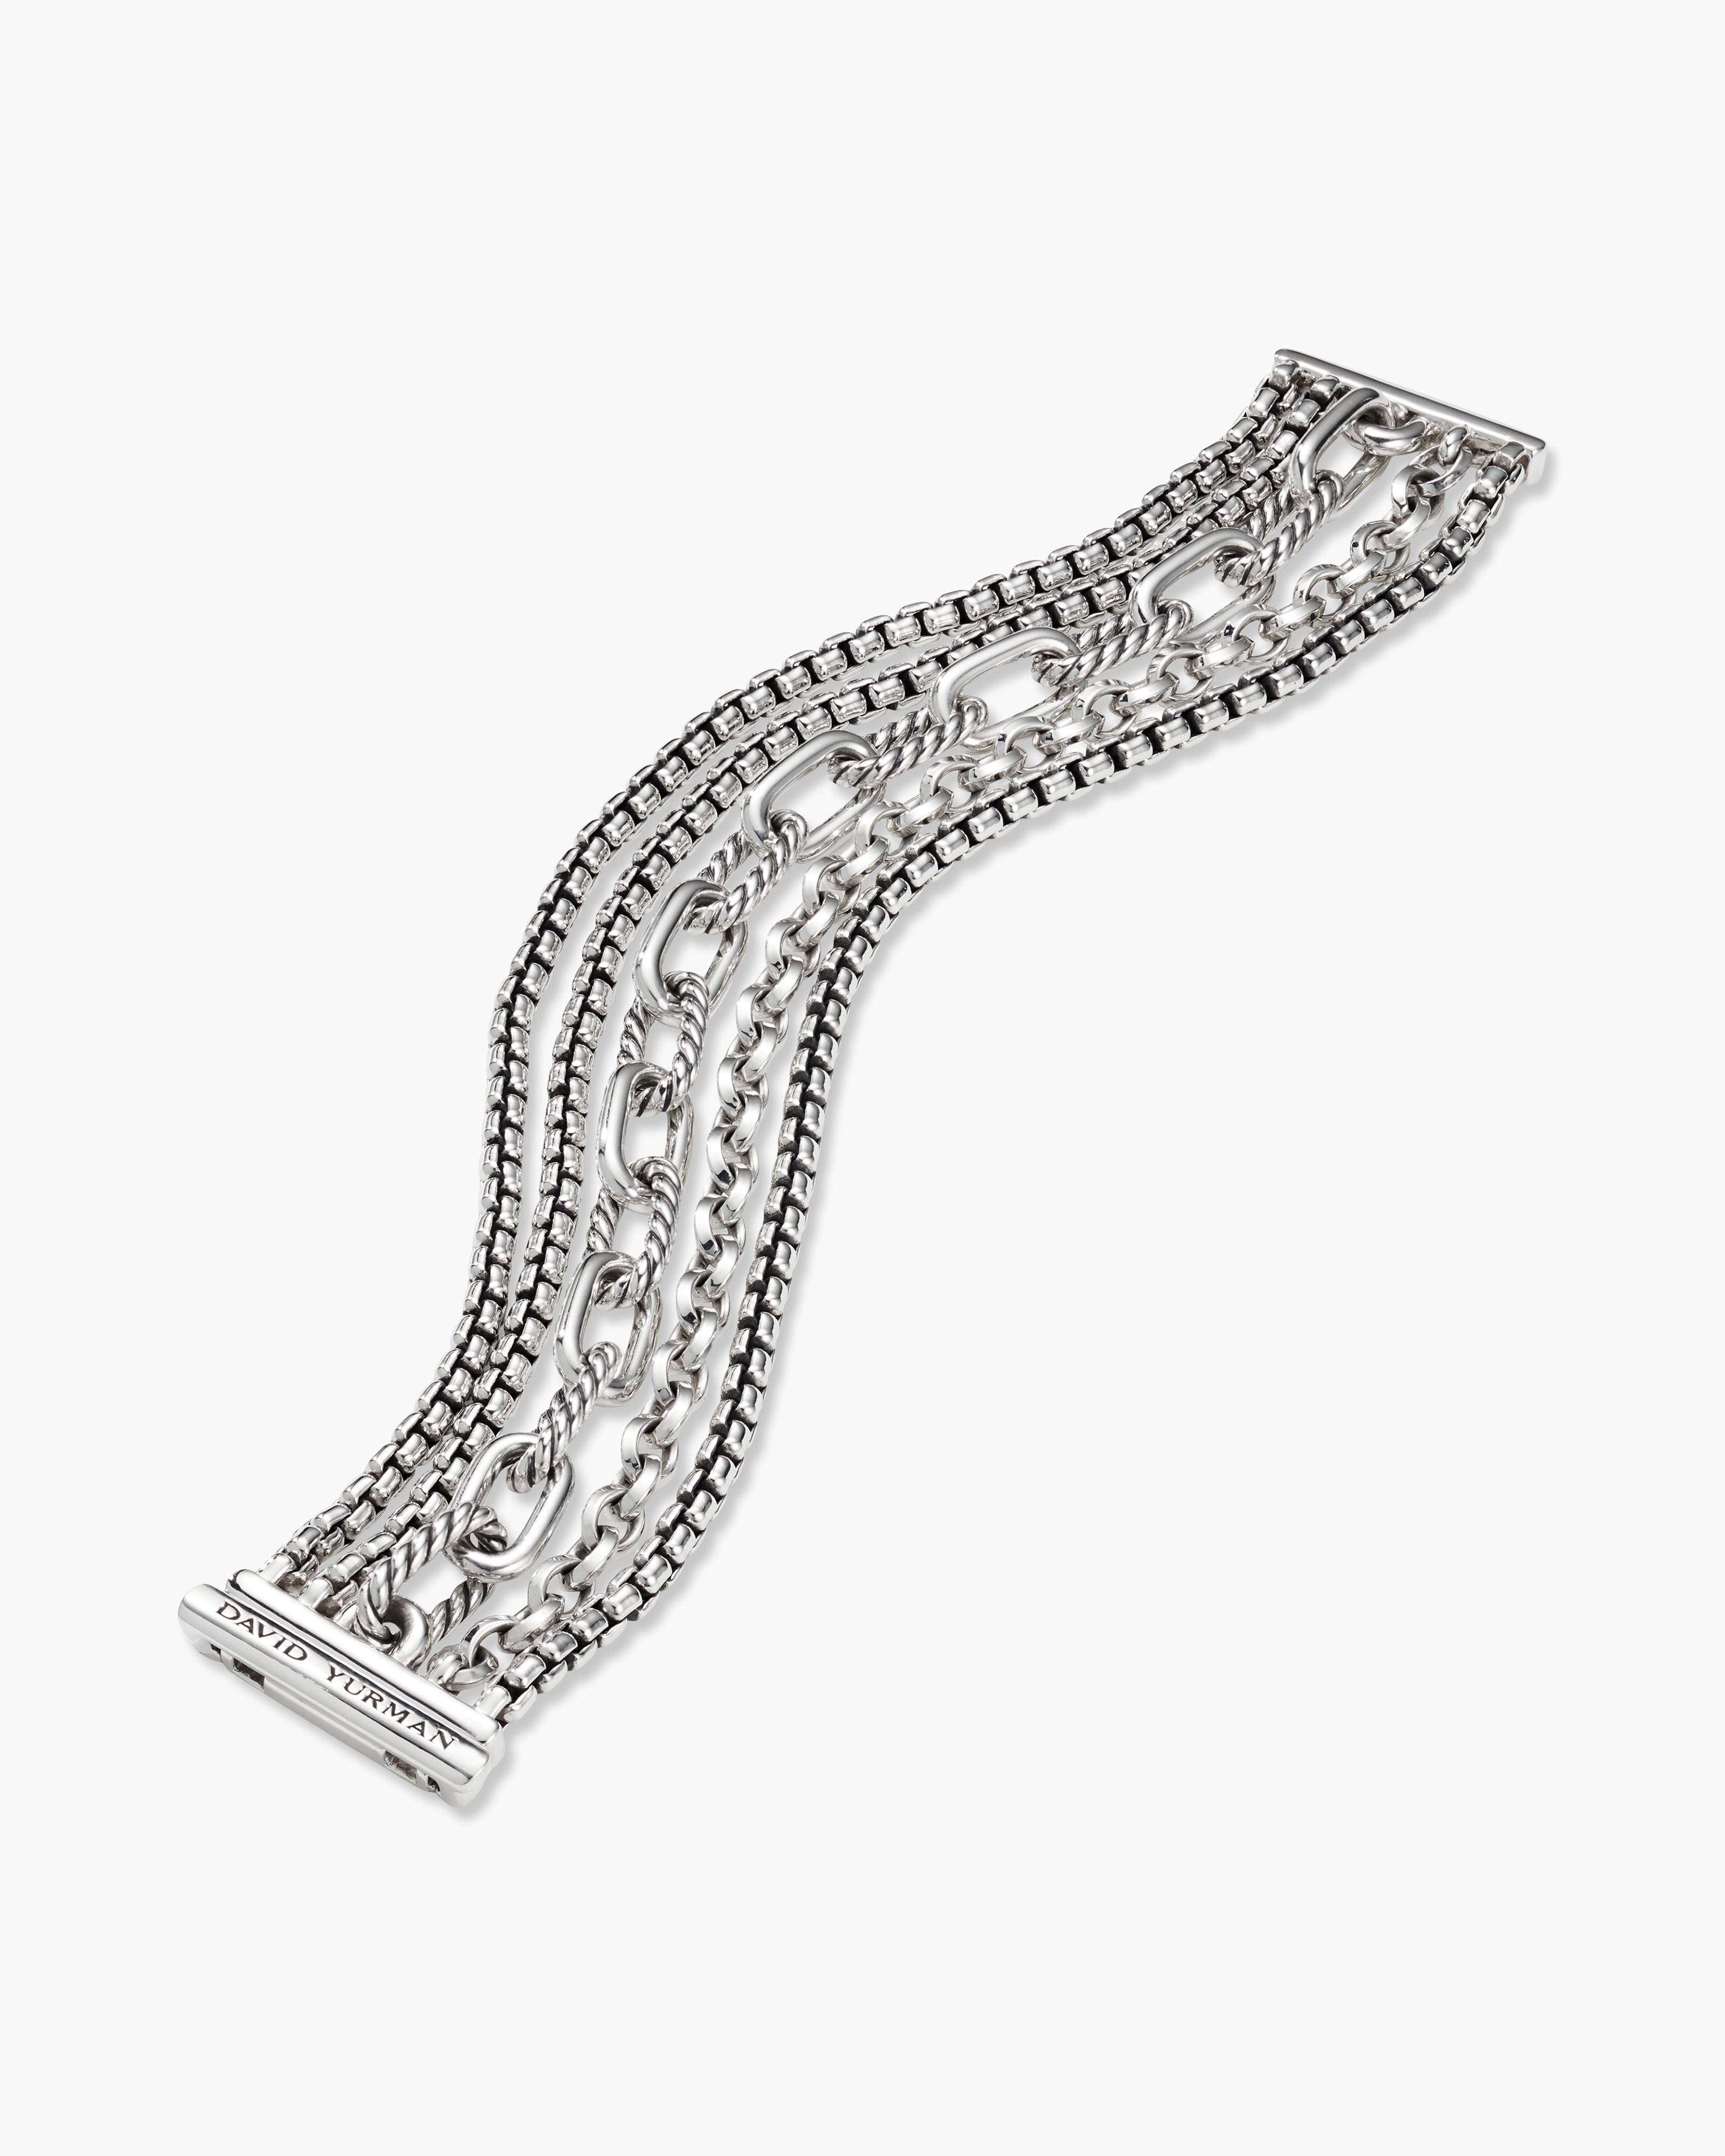 Multi Row Chain Bracelet in Sterling Silver, 29mm